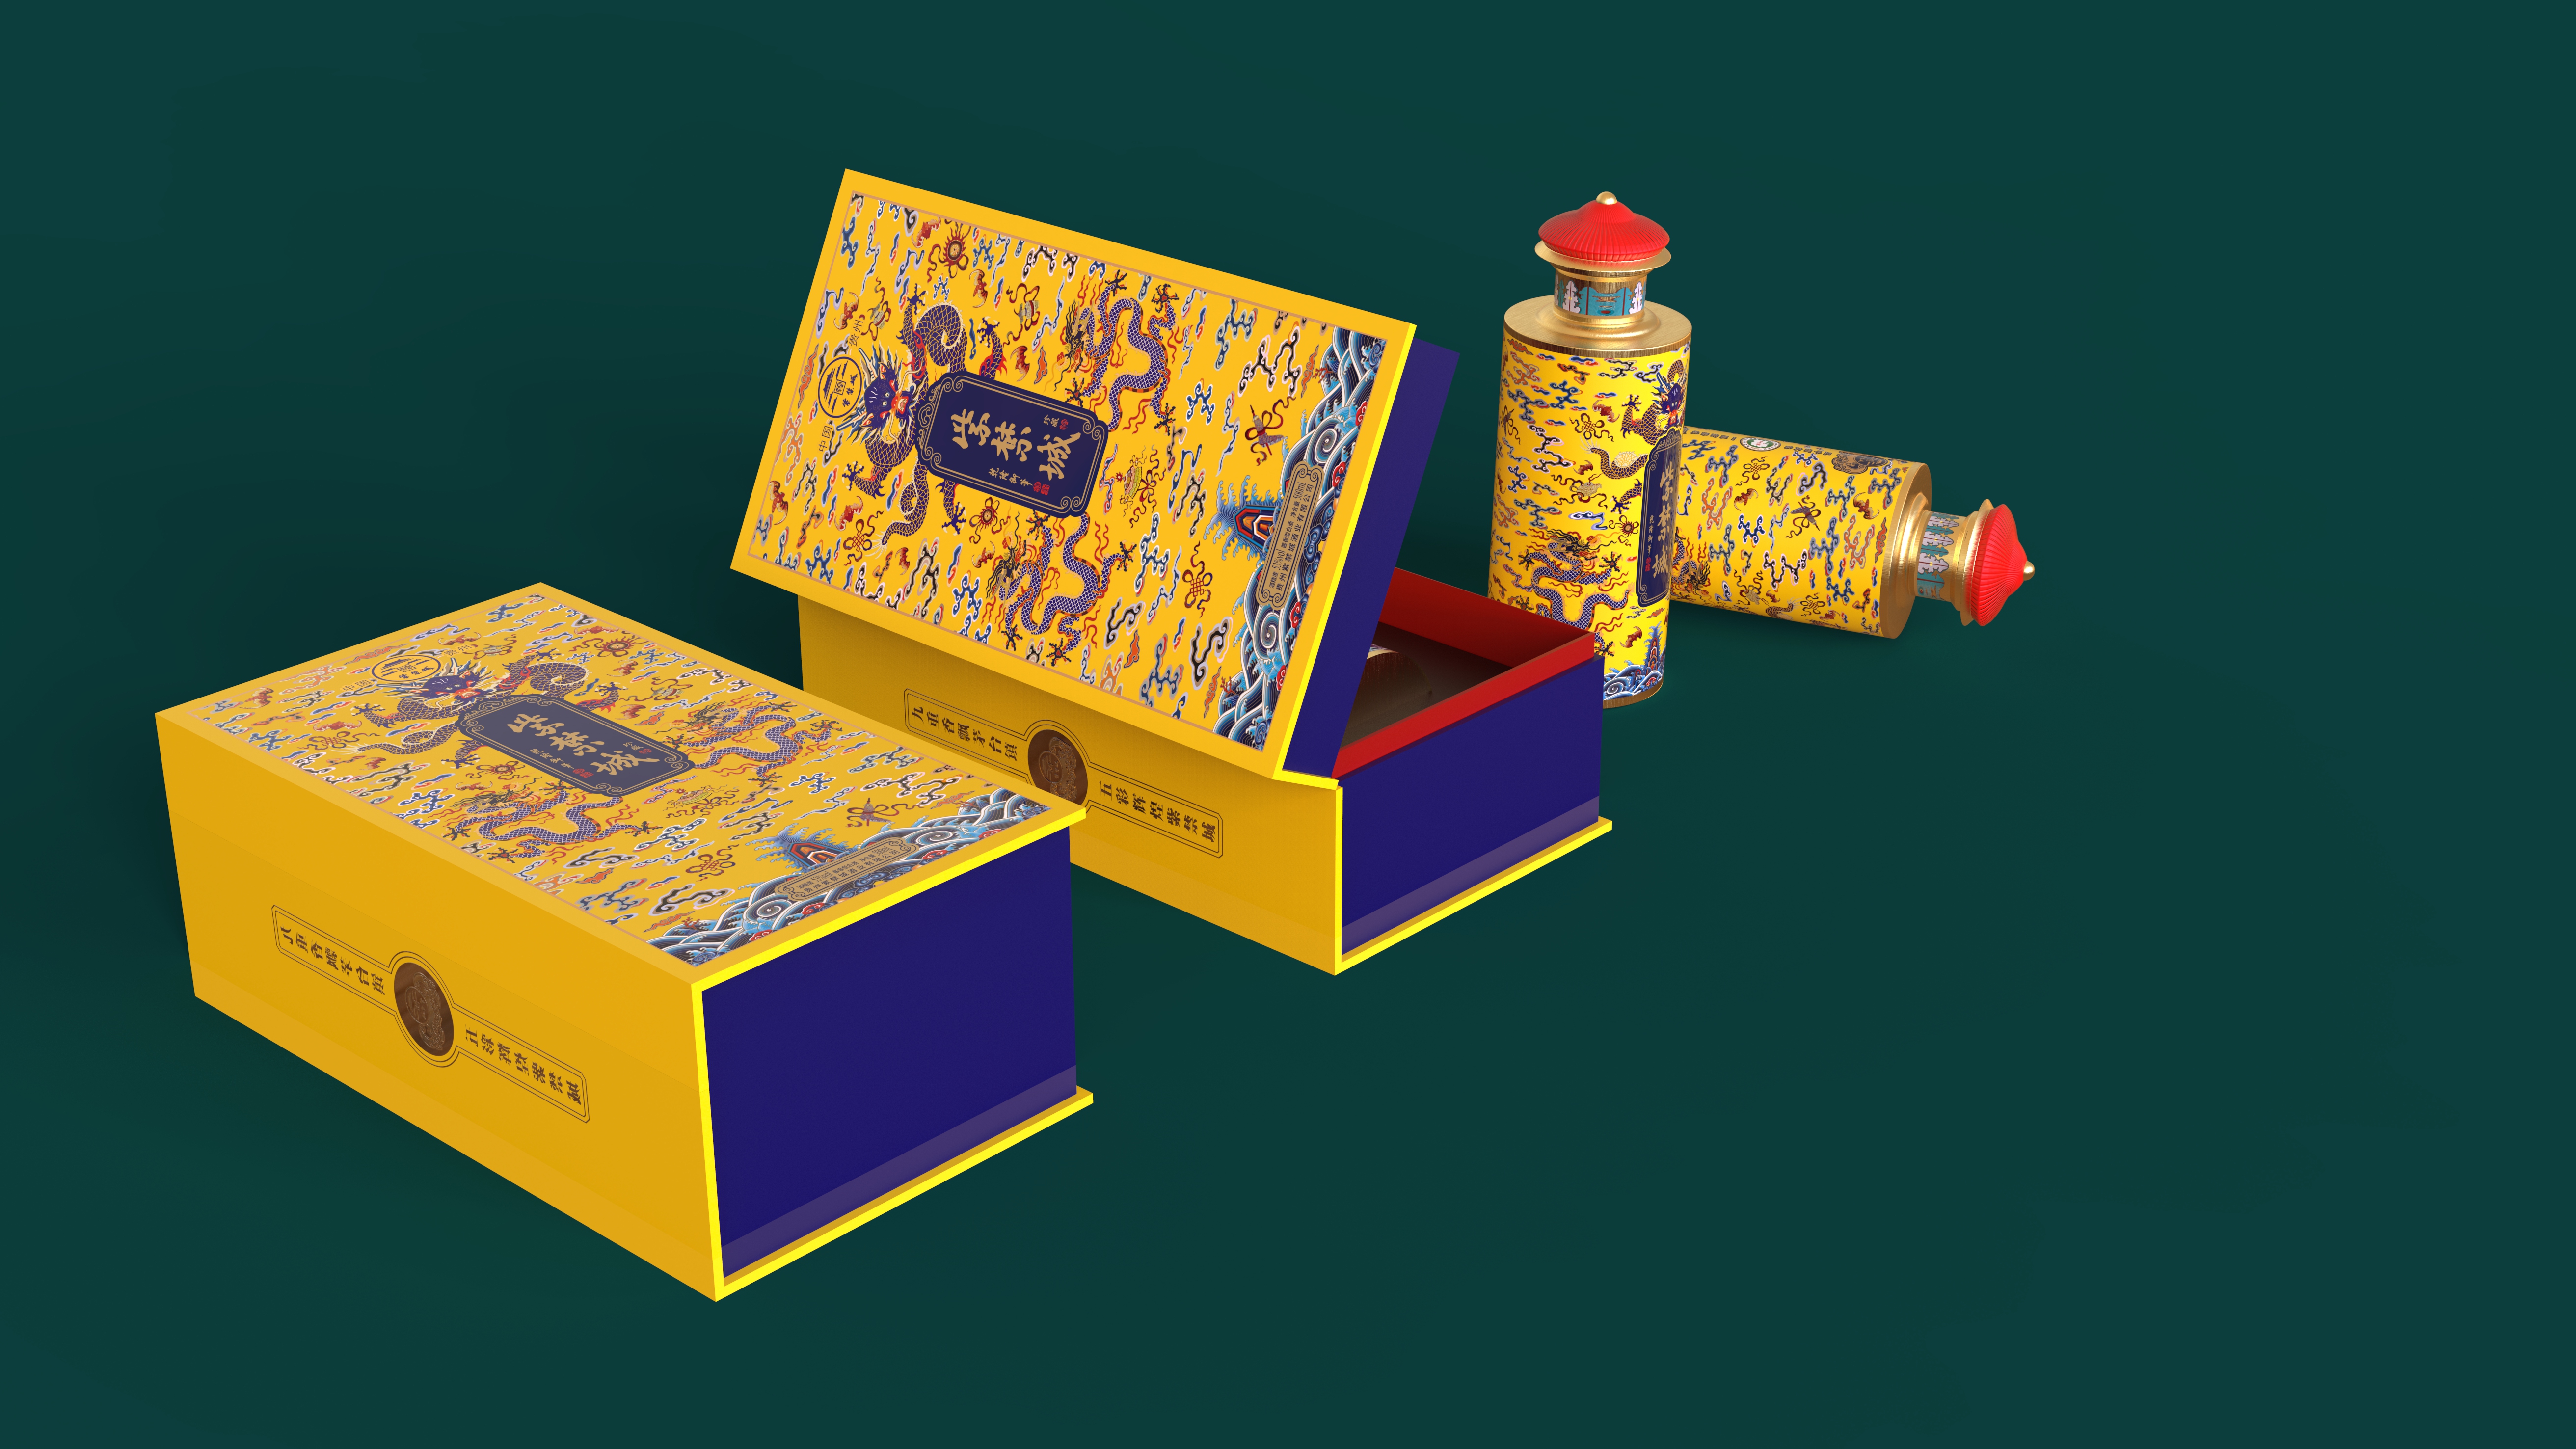 白酒包装盒设计 — 紫禁城•珍藏